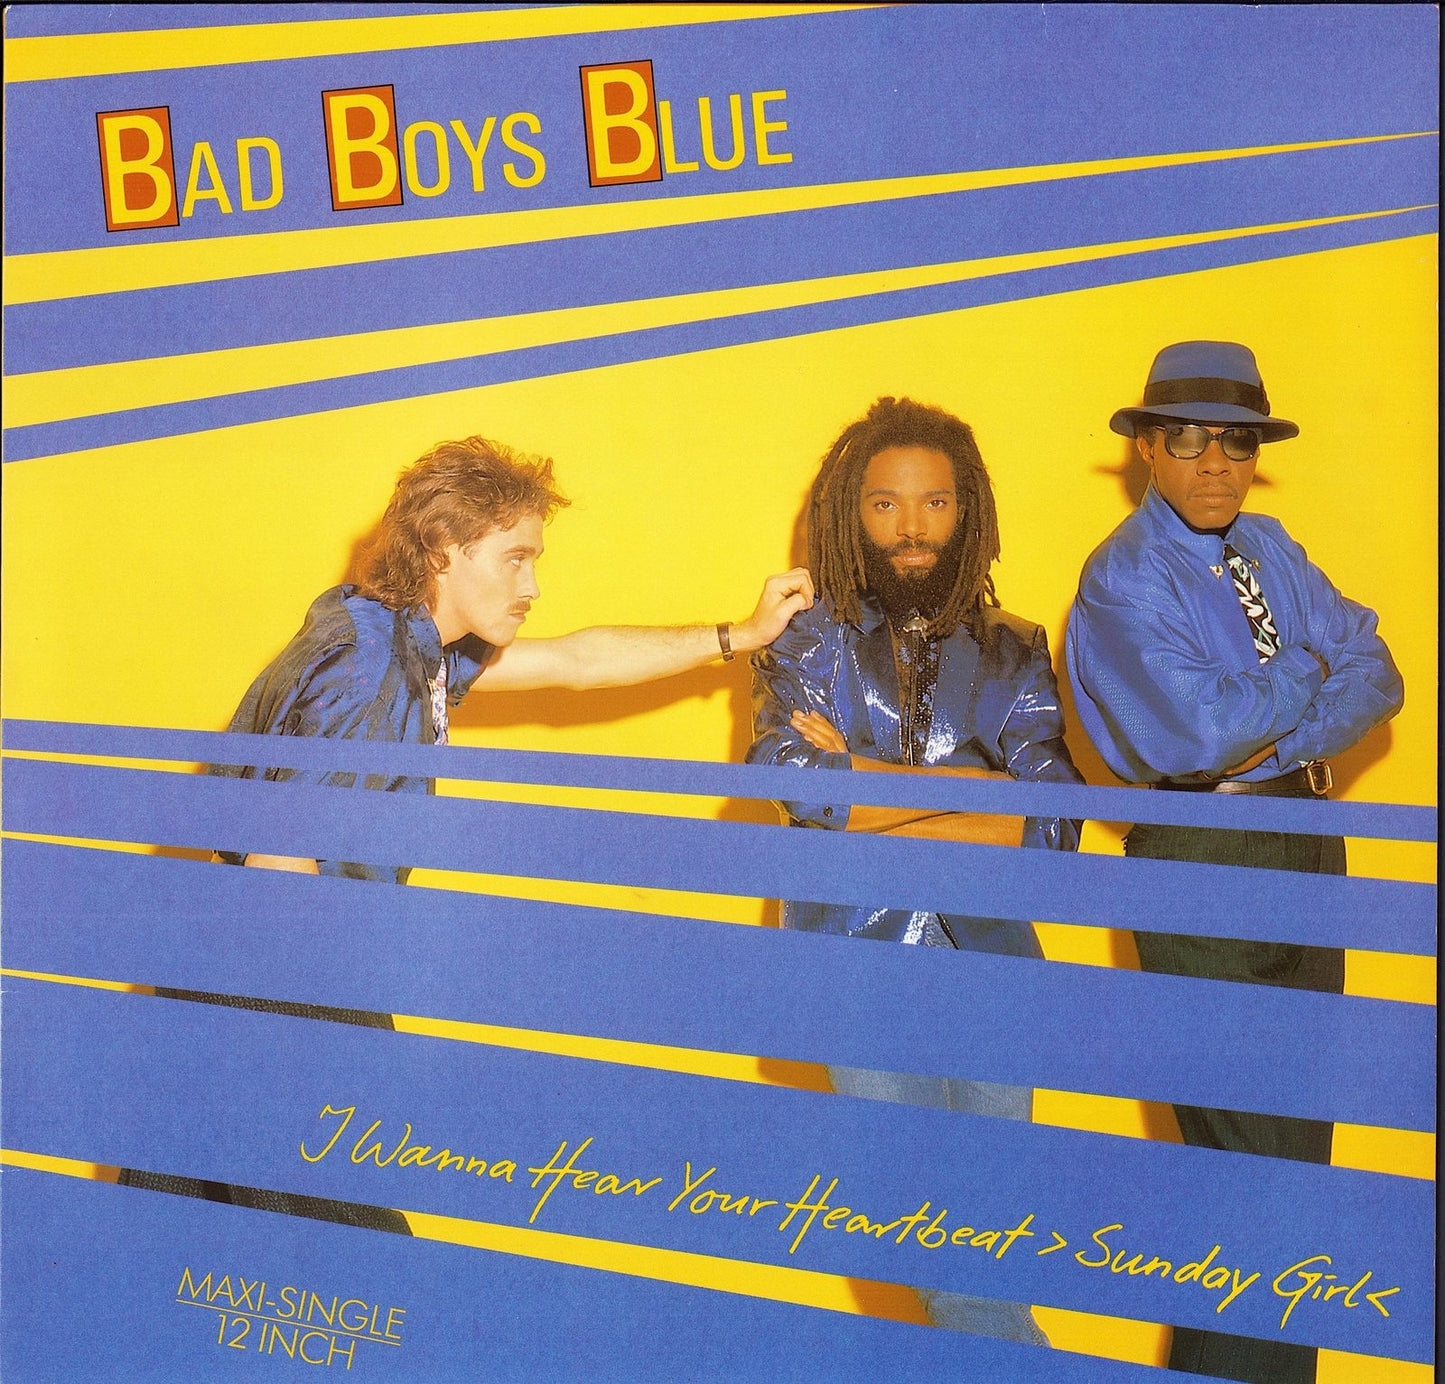 Bad Boys Blue - I Wanna Hear Your Heartbeat ›Sunday Girl‹ Vinyl 12"